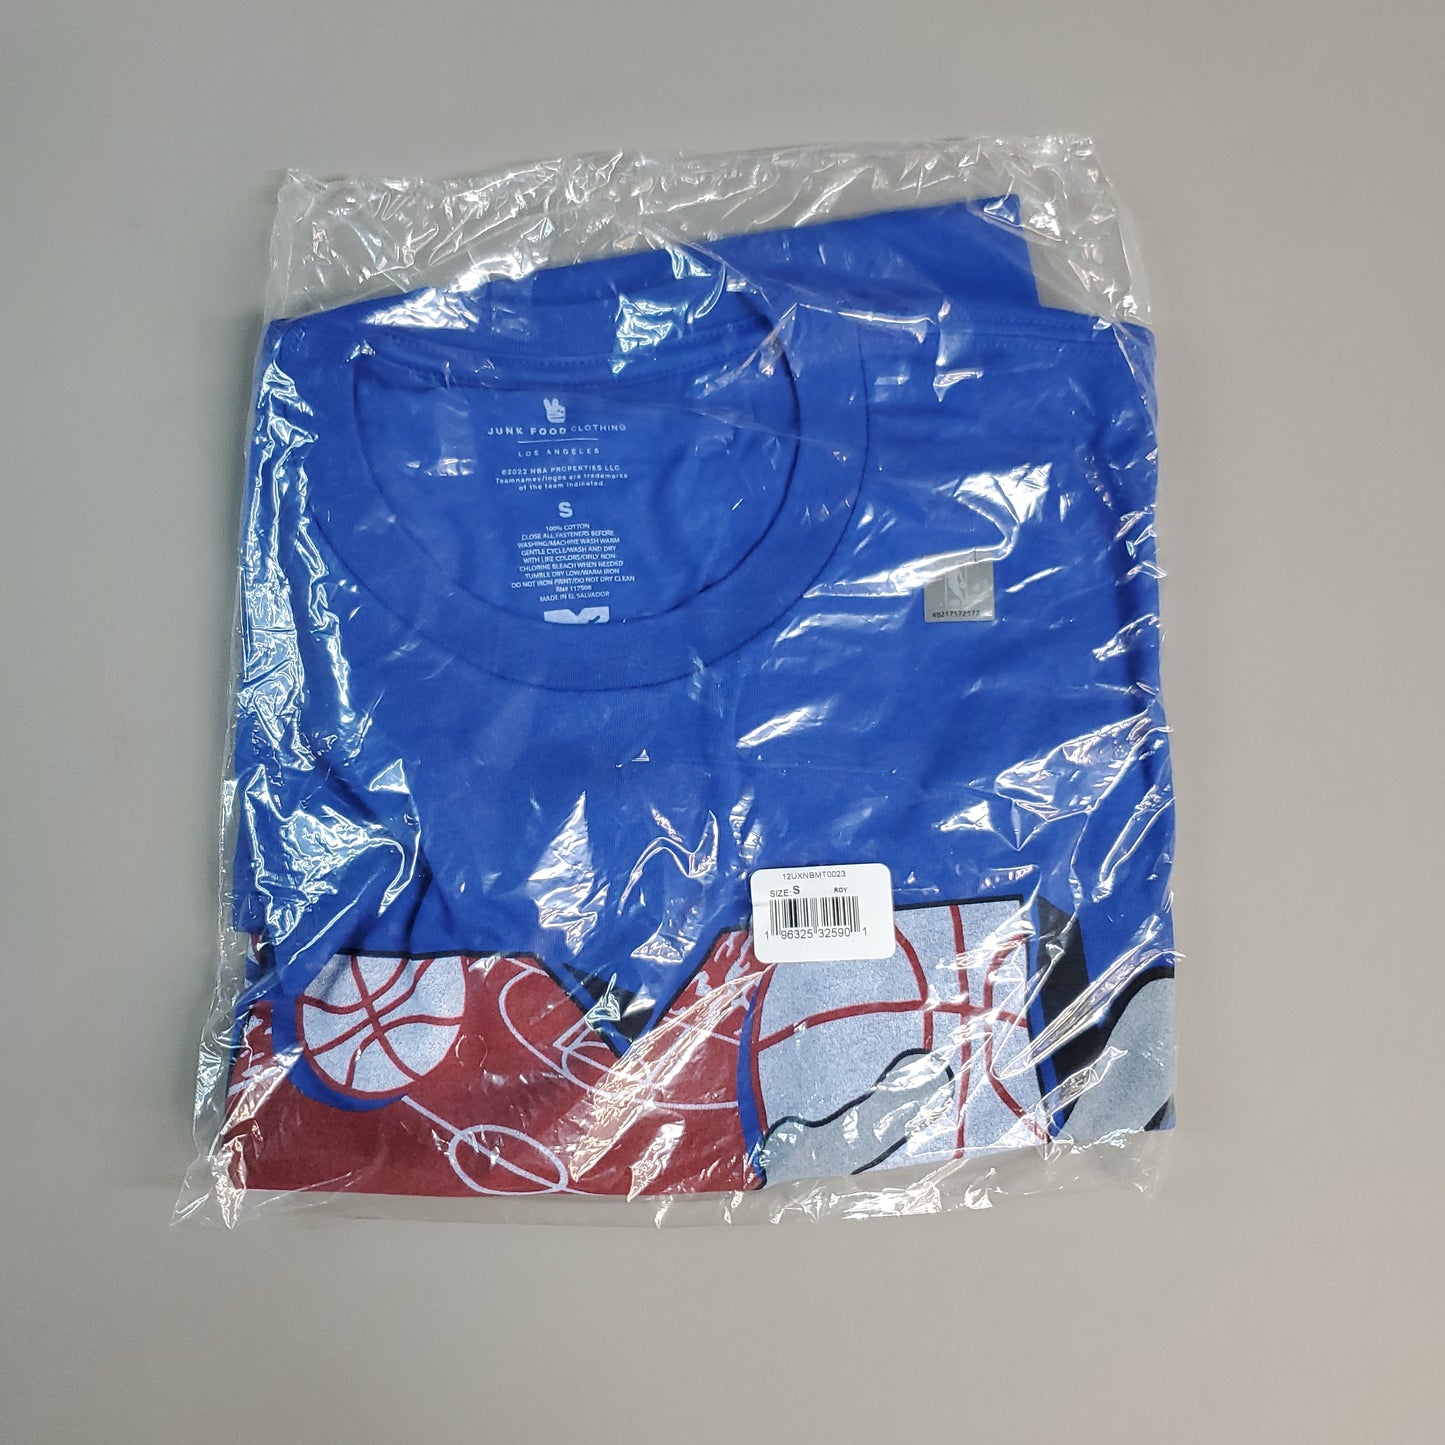 JUNK FOOD NBA MTV Short Sleeve T-Shirt I Want My Clippers Men's Sz S Blue (New)